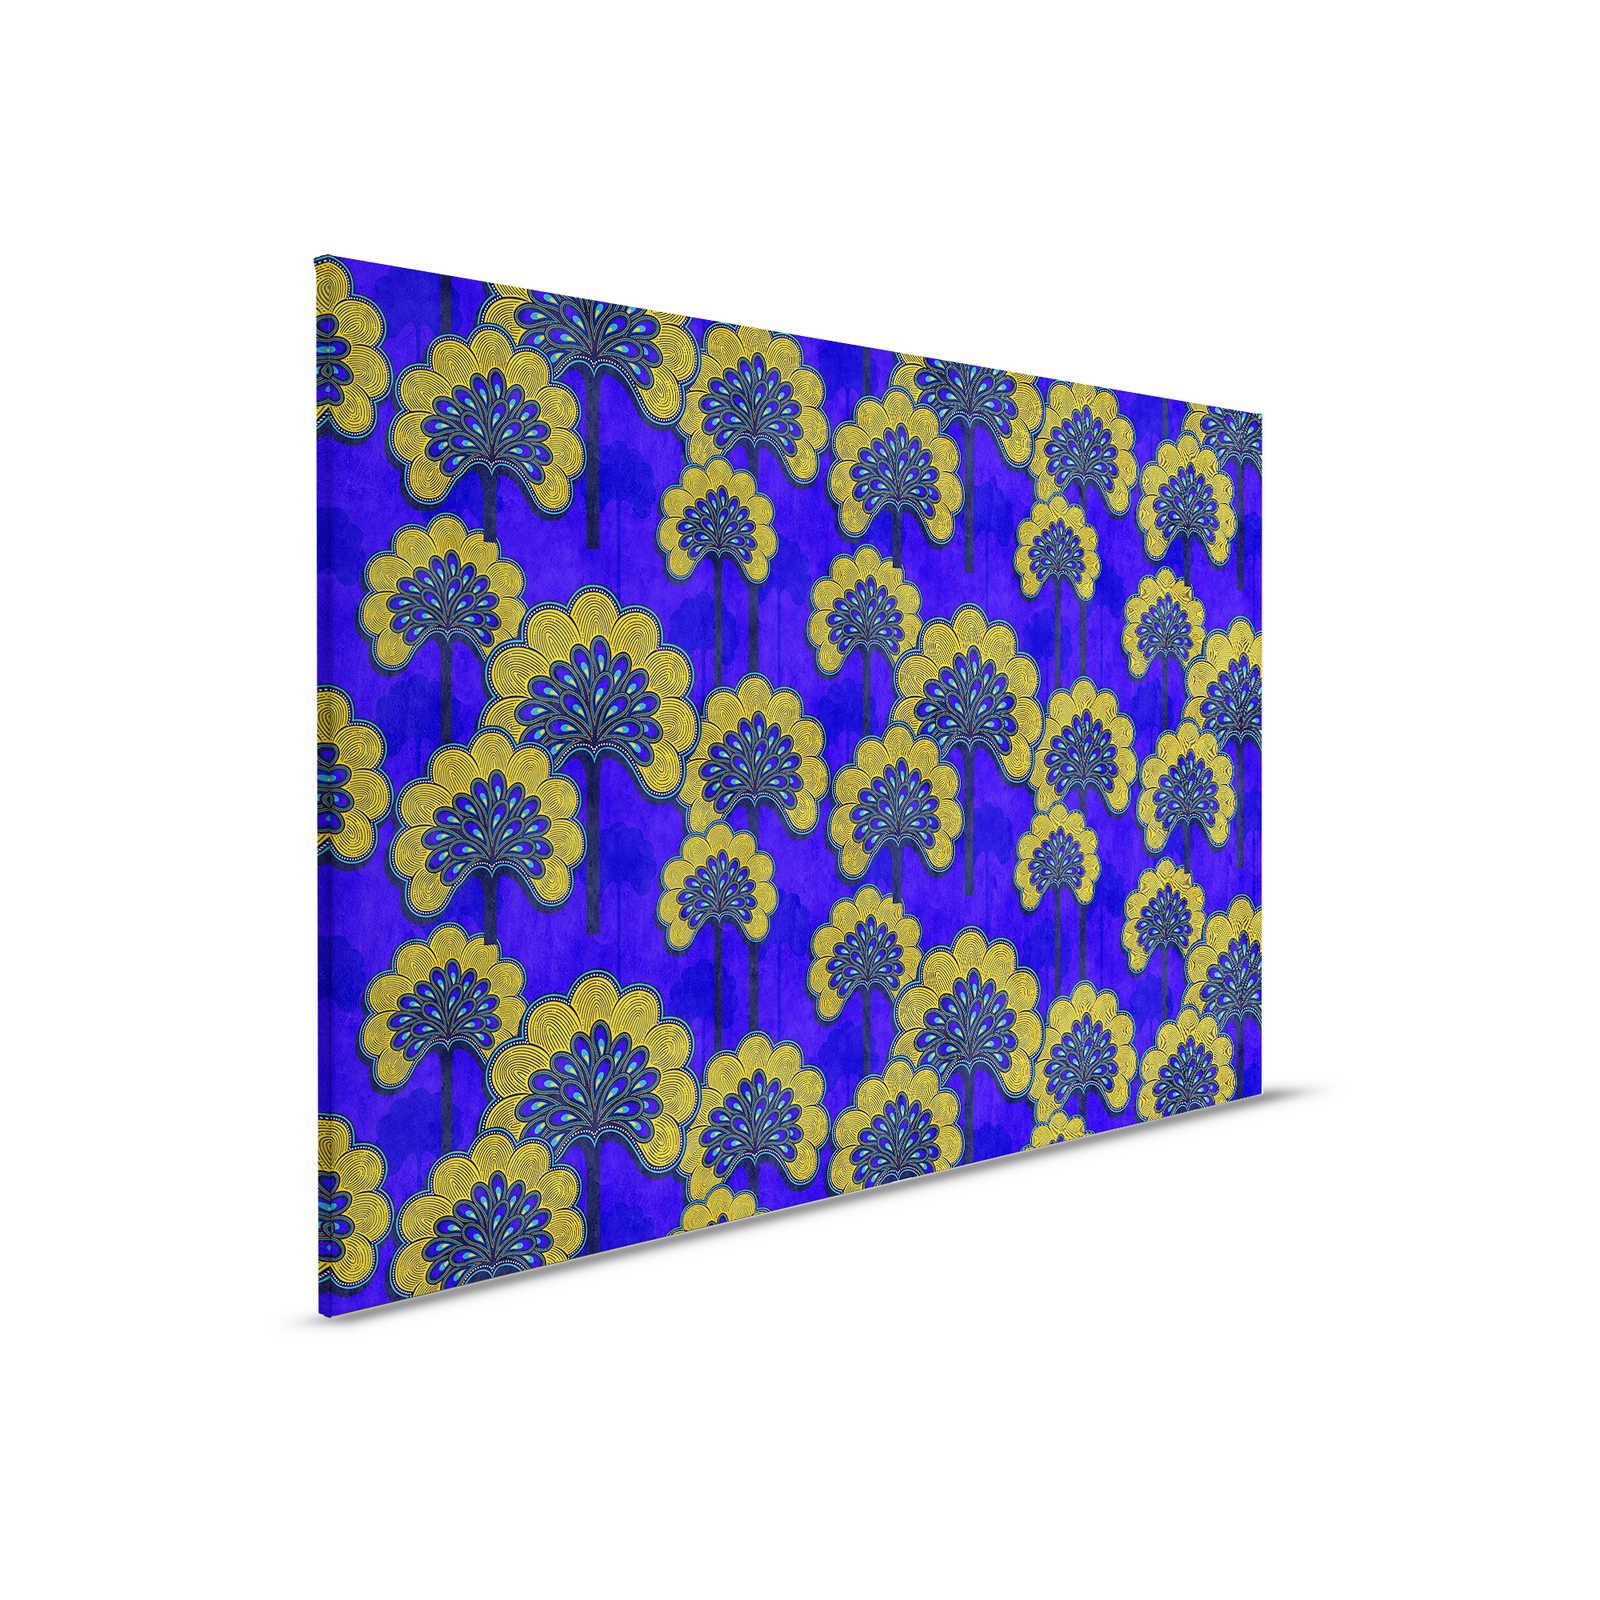 Dakar 1 - Toile motif tissu africain bleu & jaune - 0,90 m x 0,60 m
